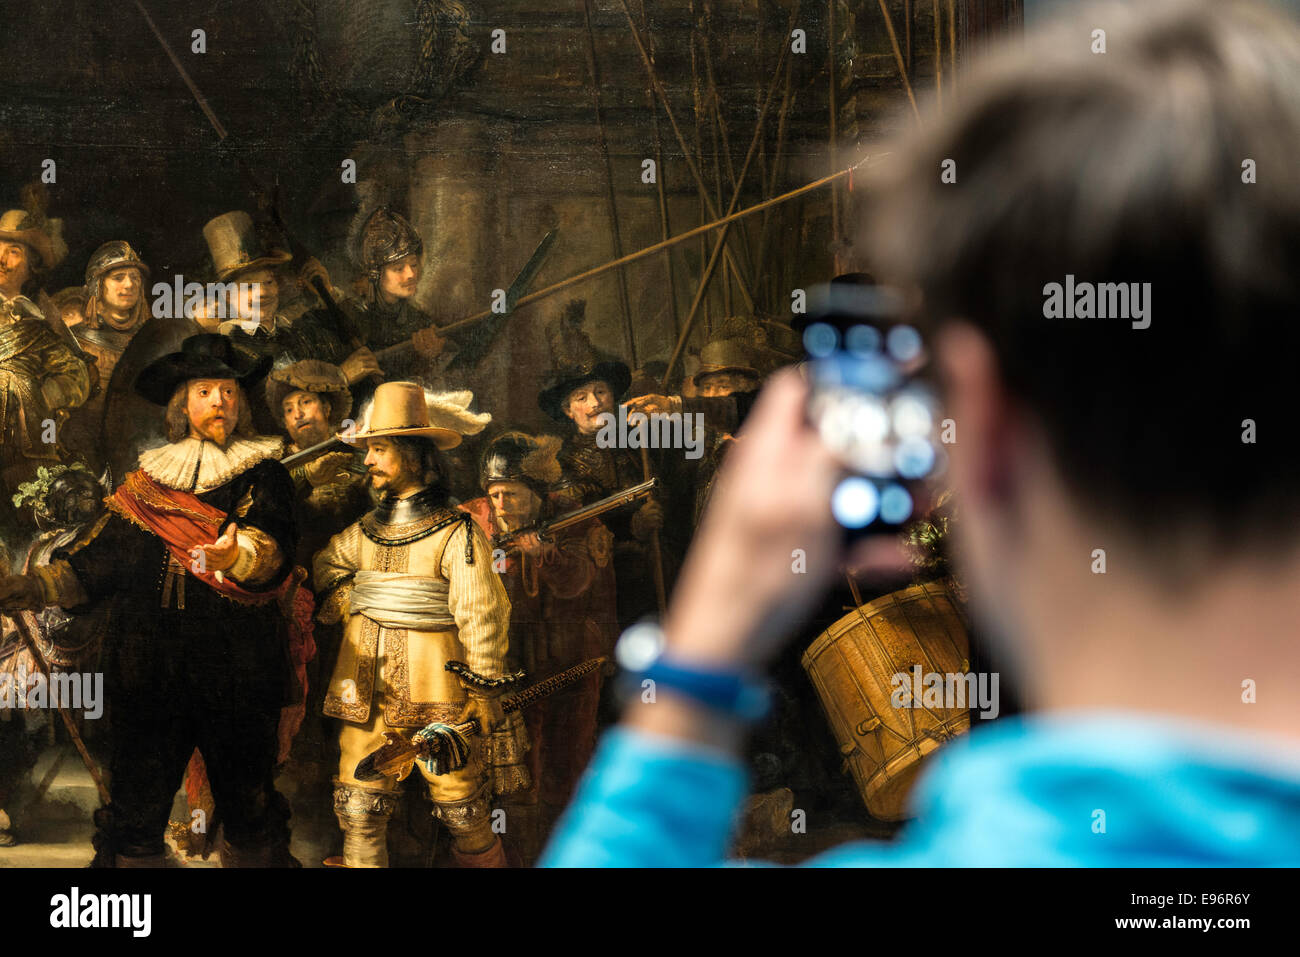 Visiteur de la photographie du musée de peinture de nuit de Rembrandt sur mobile au Rijksmuseum Amsterdam Hollande Pays-Bas Banque D'Images